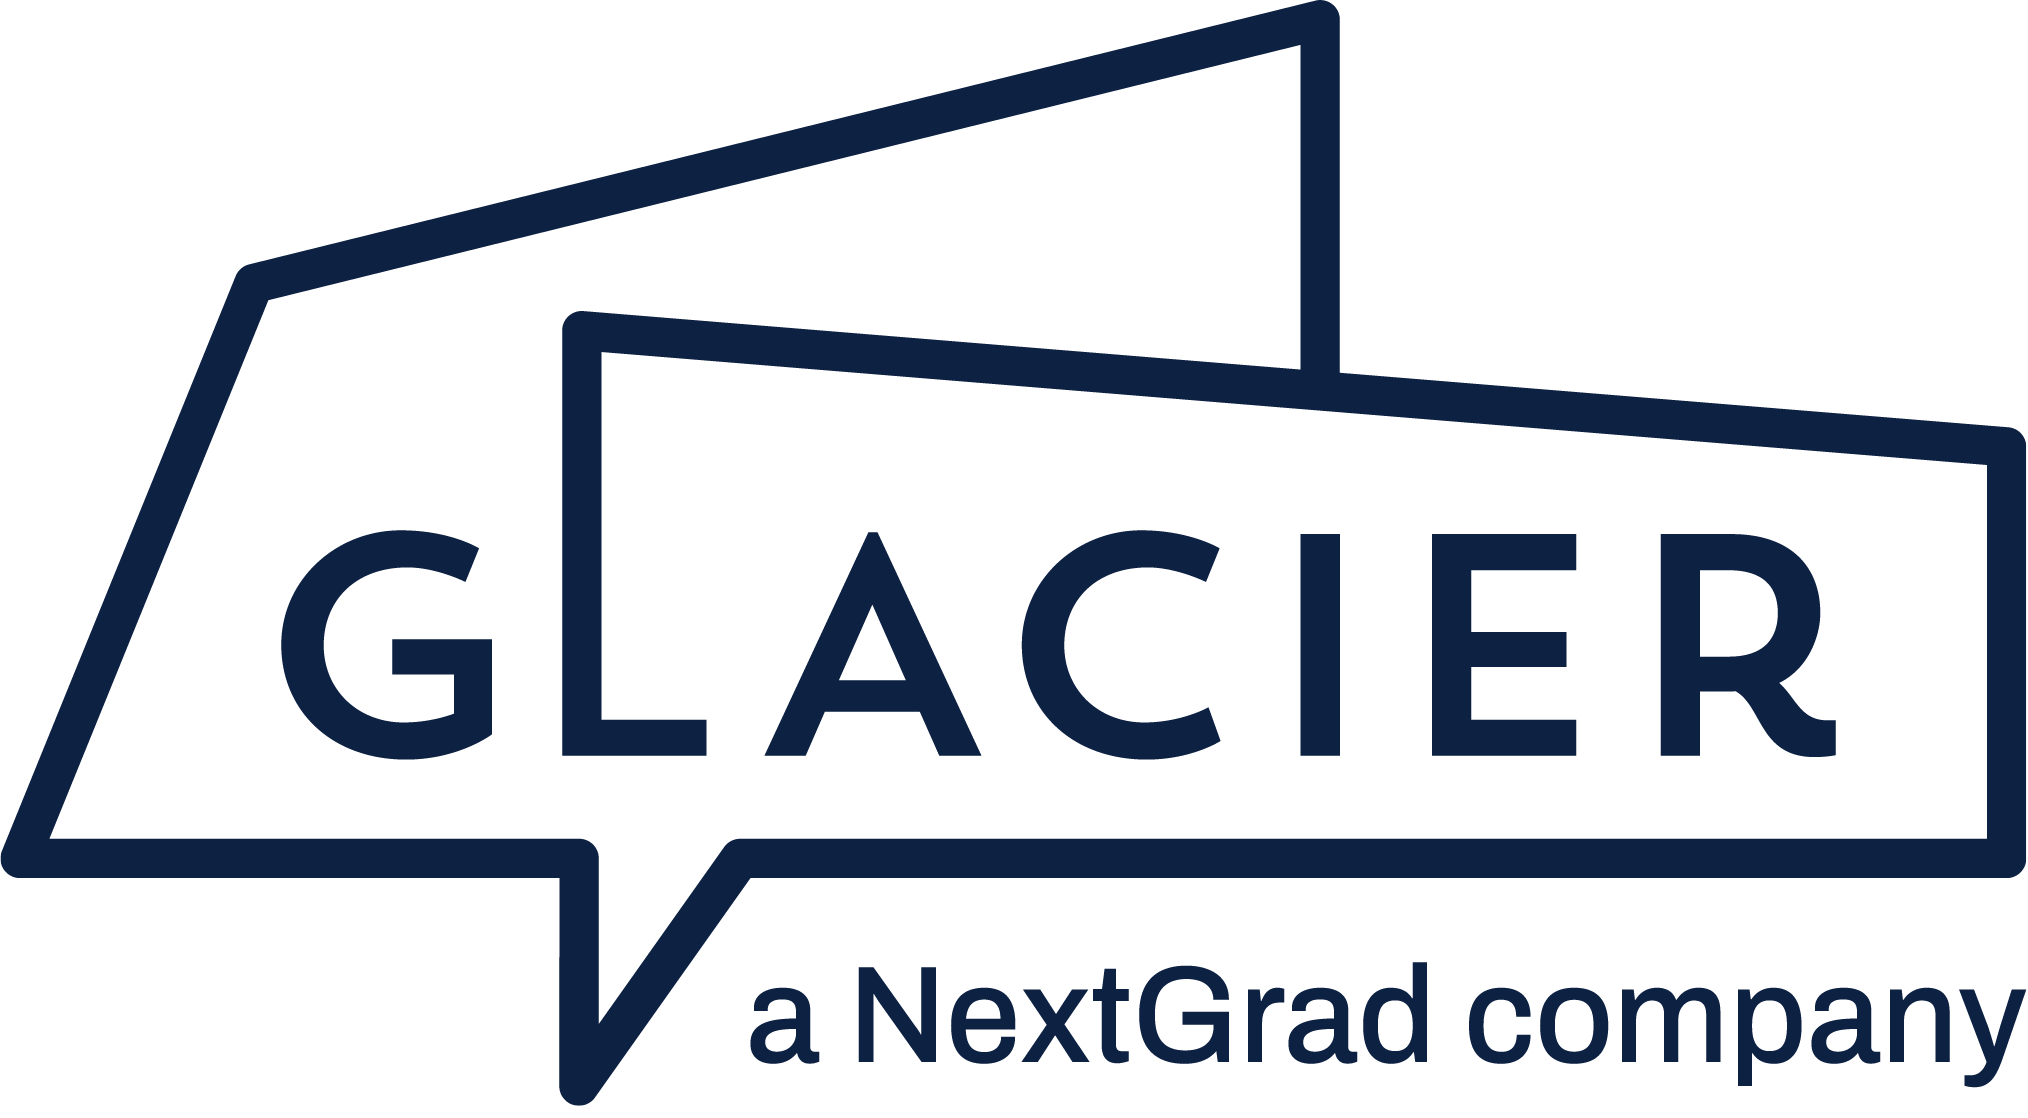 Glacier. A NextGrad company